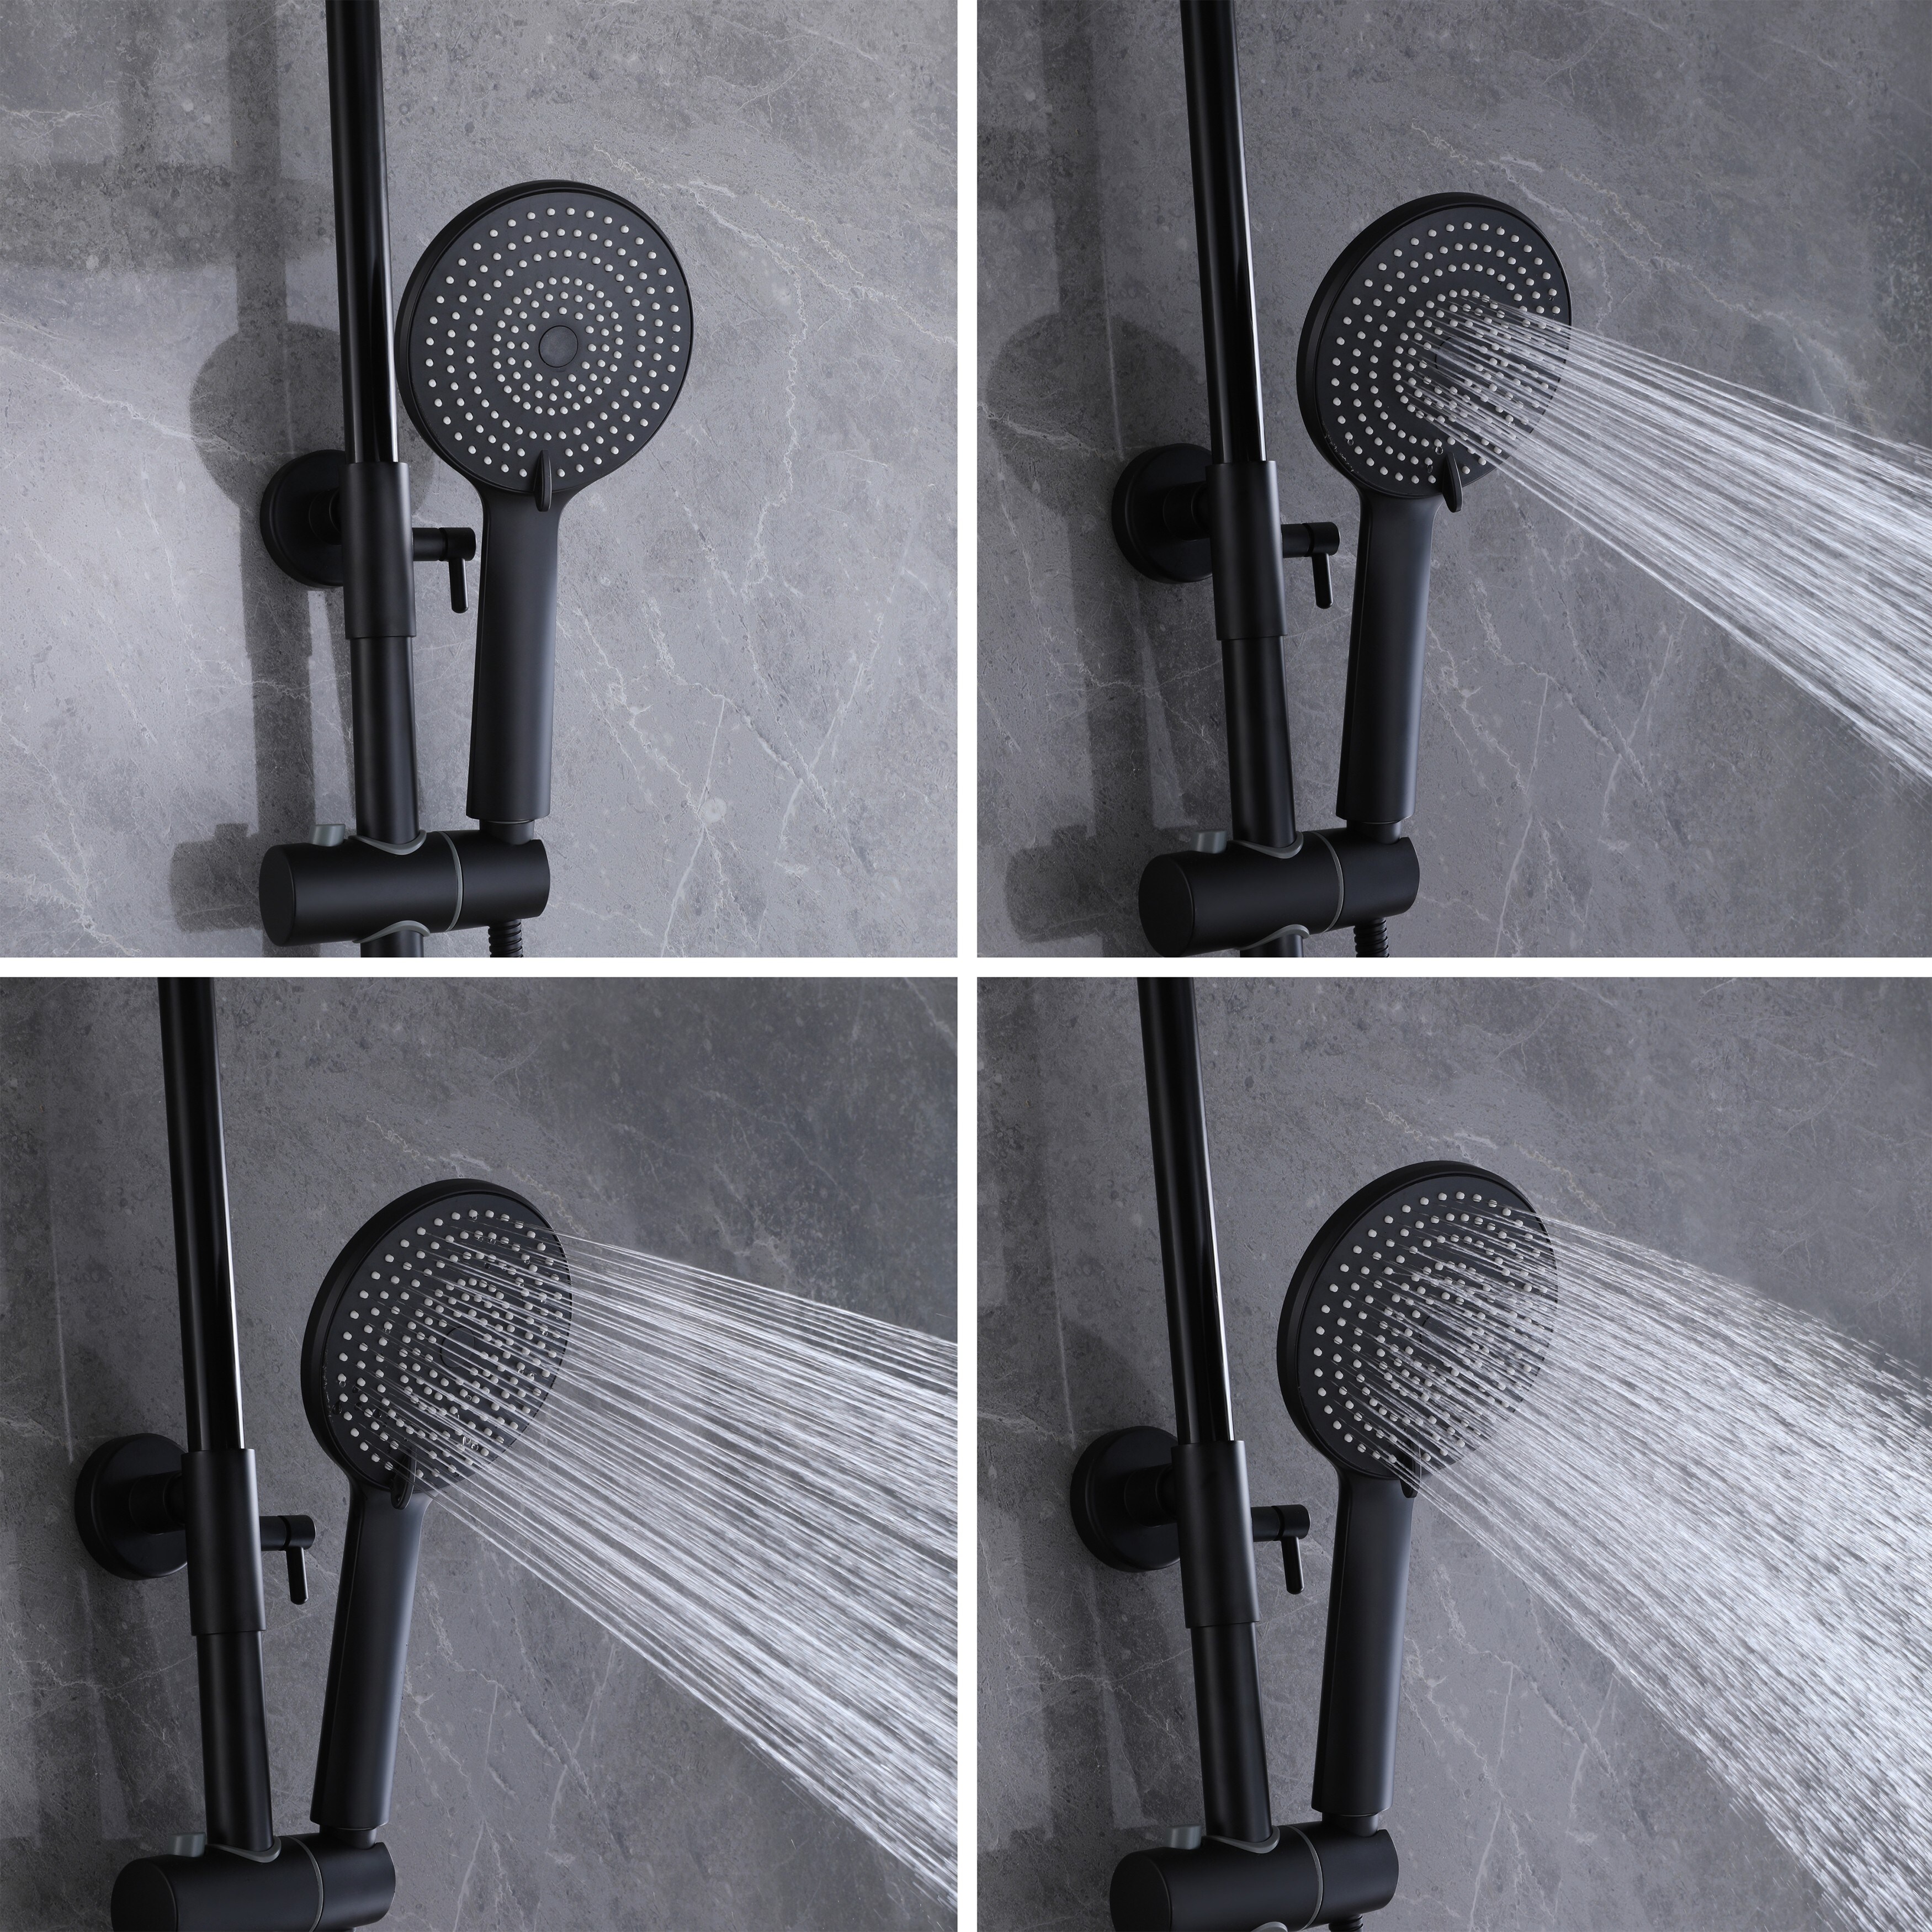 EPOWP Shower System Hand Shower Adjustable Slide Bar and Soap Dish - Bed  Bath & Beyond - 35531230